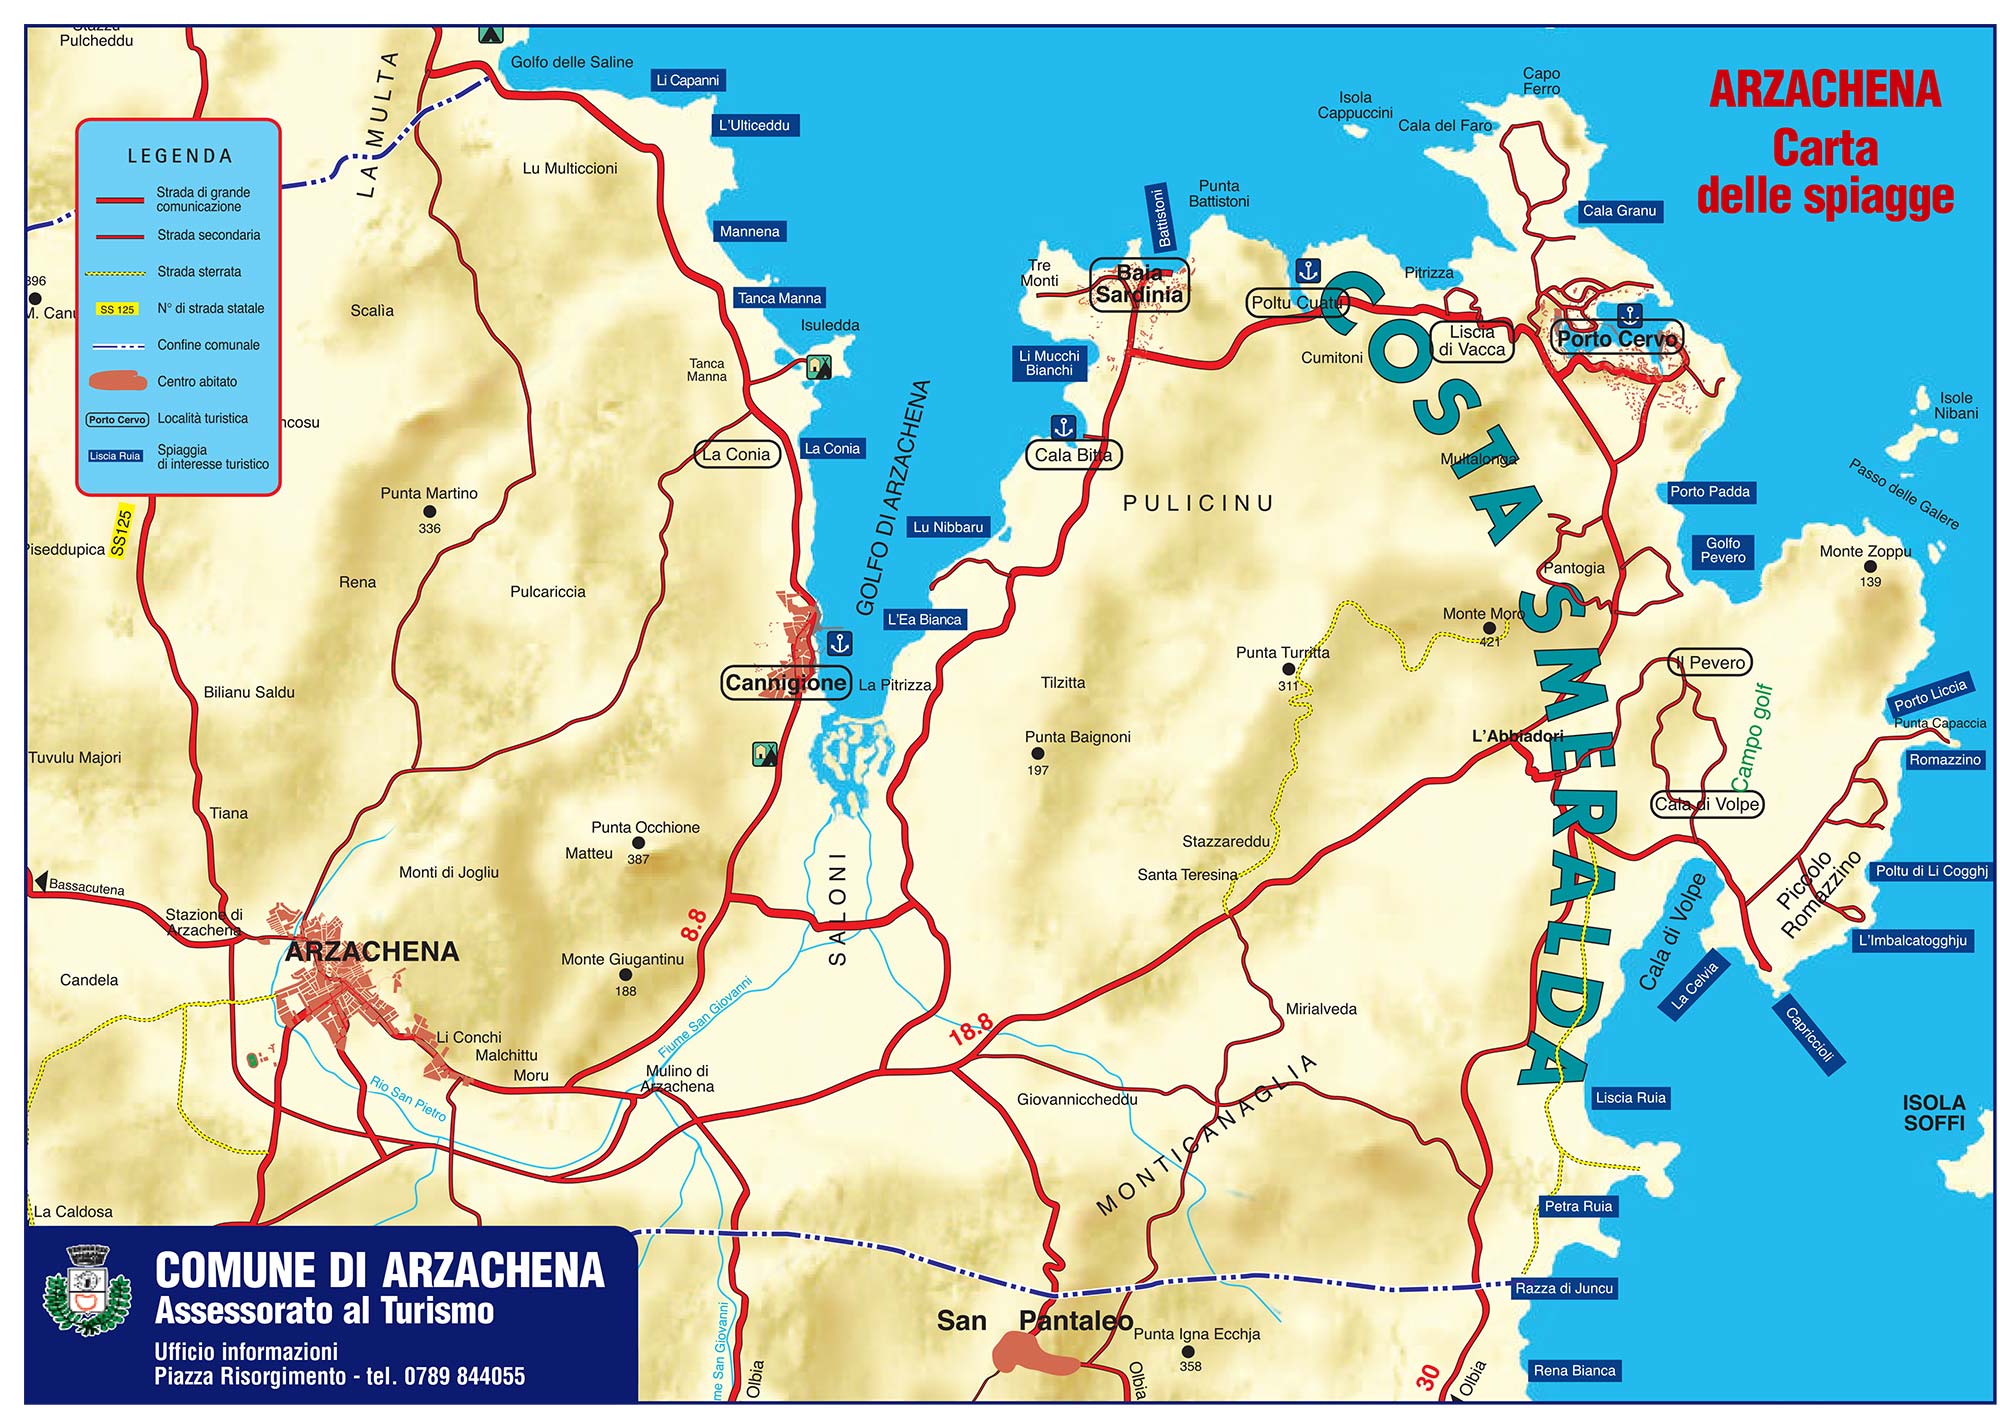 La cartina e le informazioni sulle spiagge di Arzachena e della Costa Smeralda